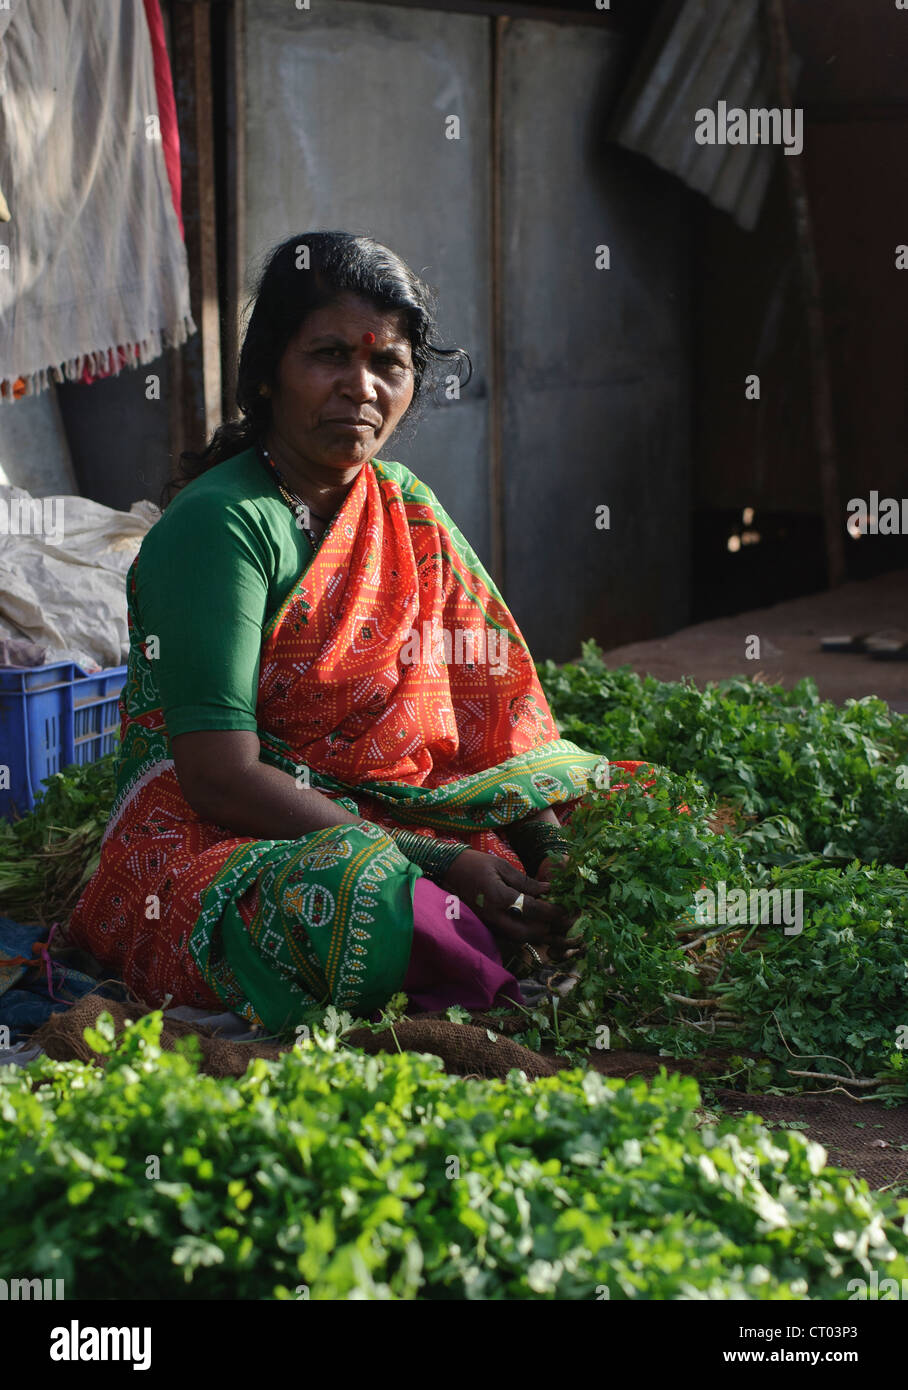 15th May, 2008. Nasik, India. An Indian market trader sells cilantro at a Nasik market, India. Stock Photo